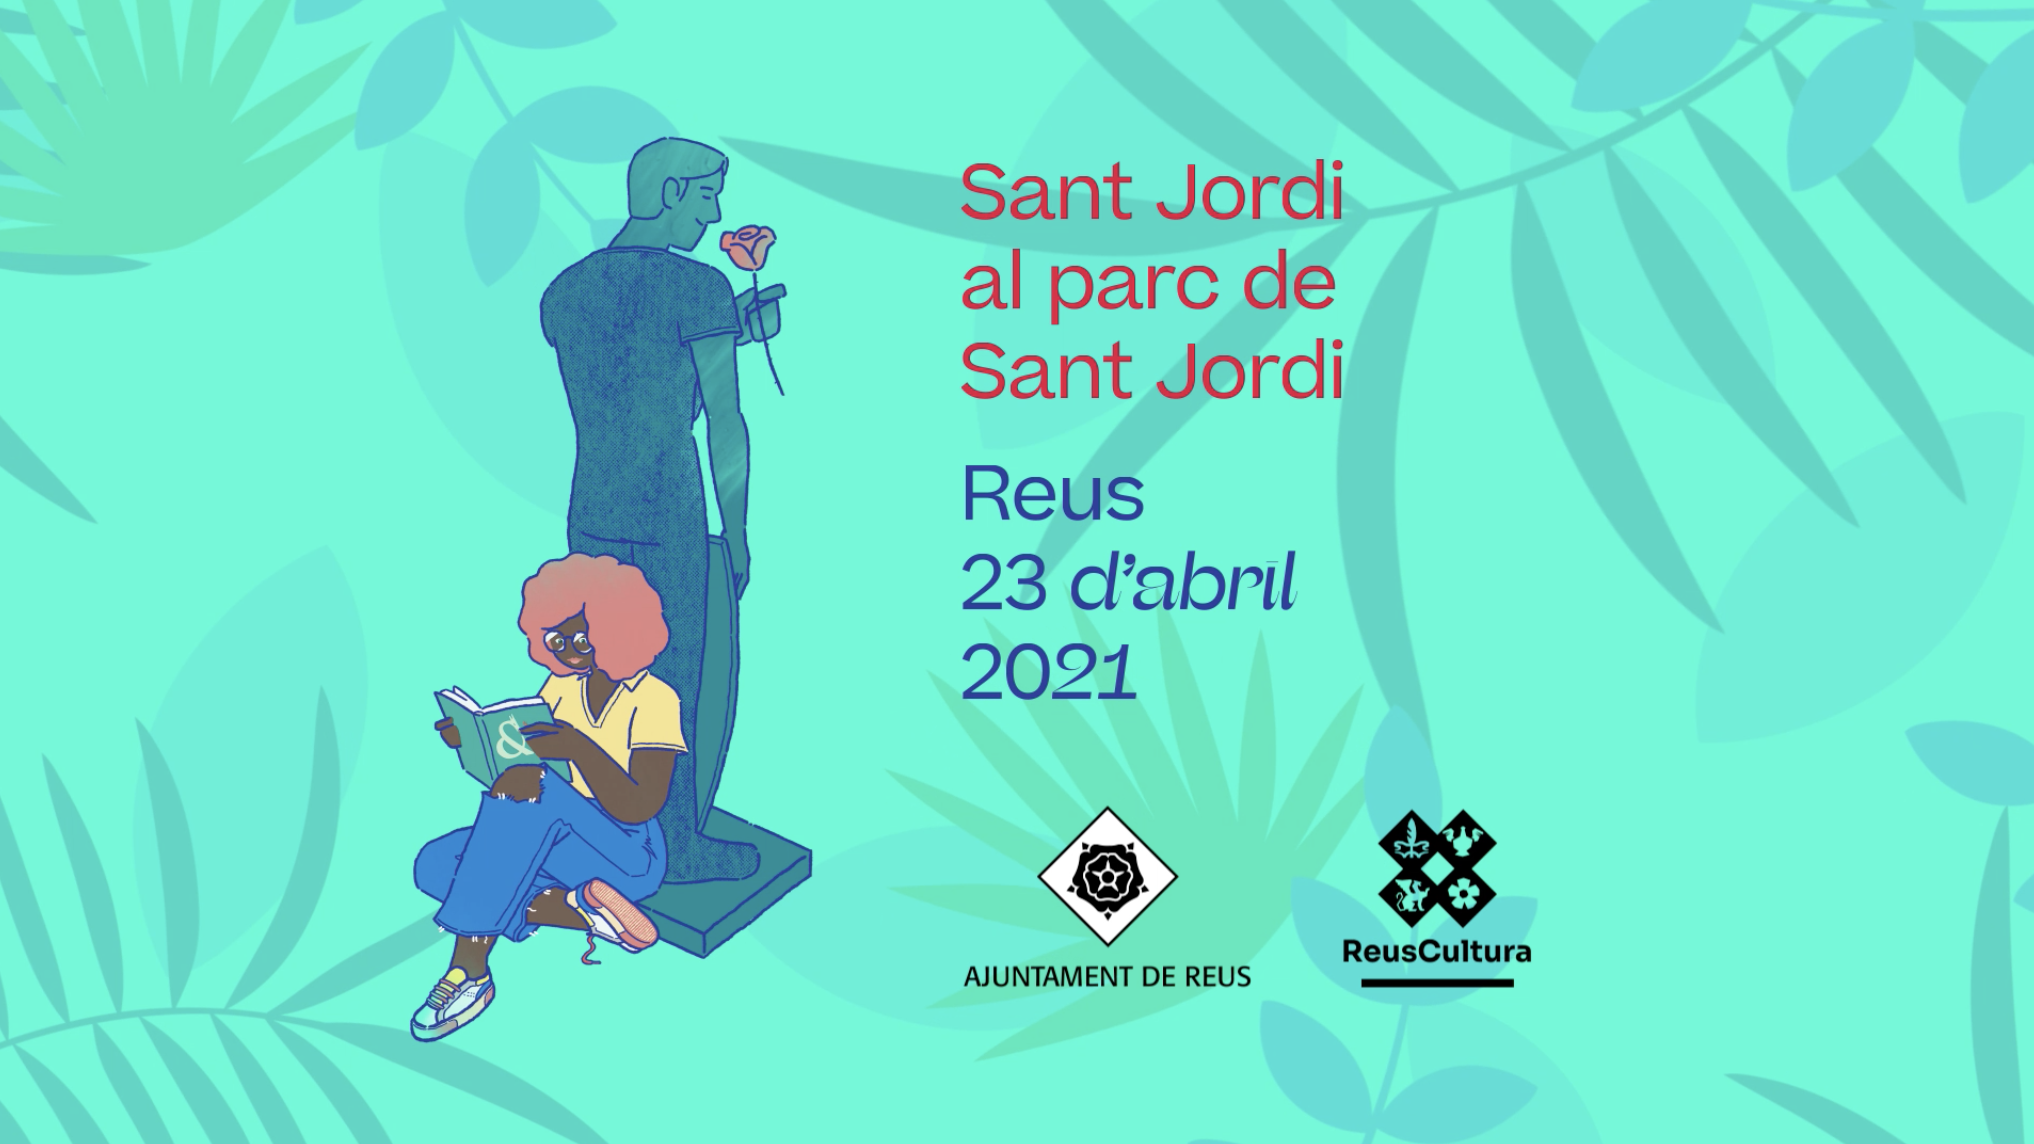 Autors signatura llibres Sant Jordi 2021